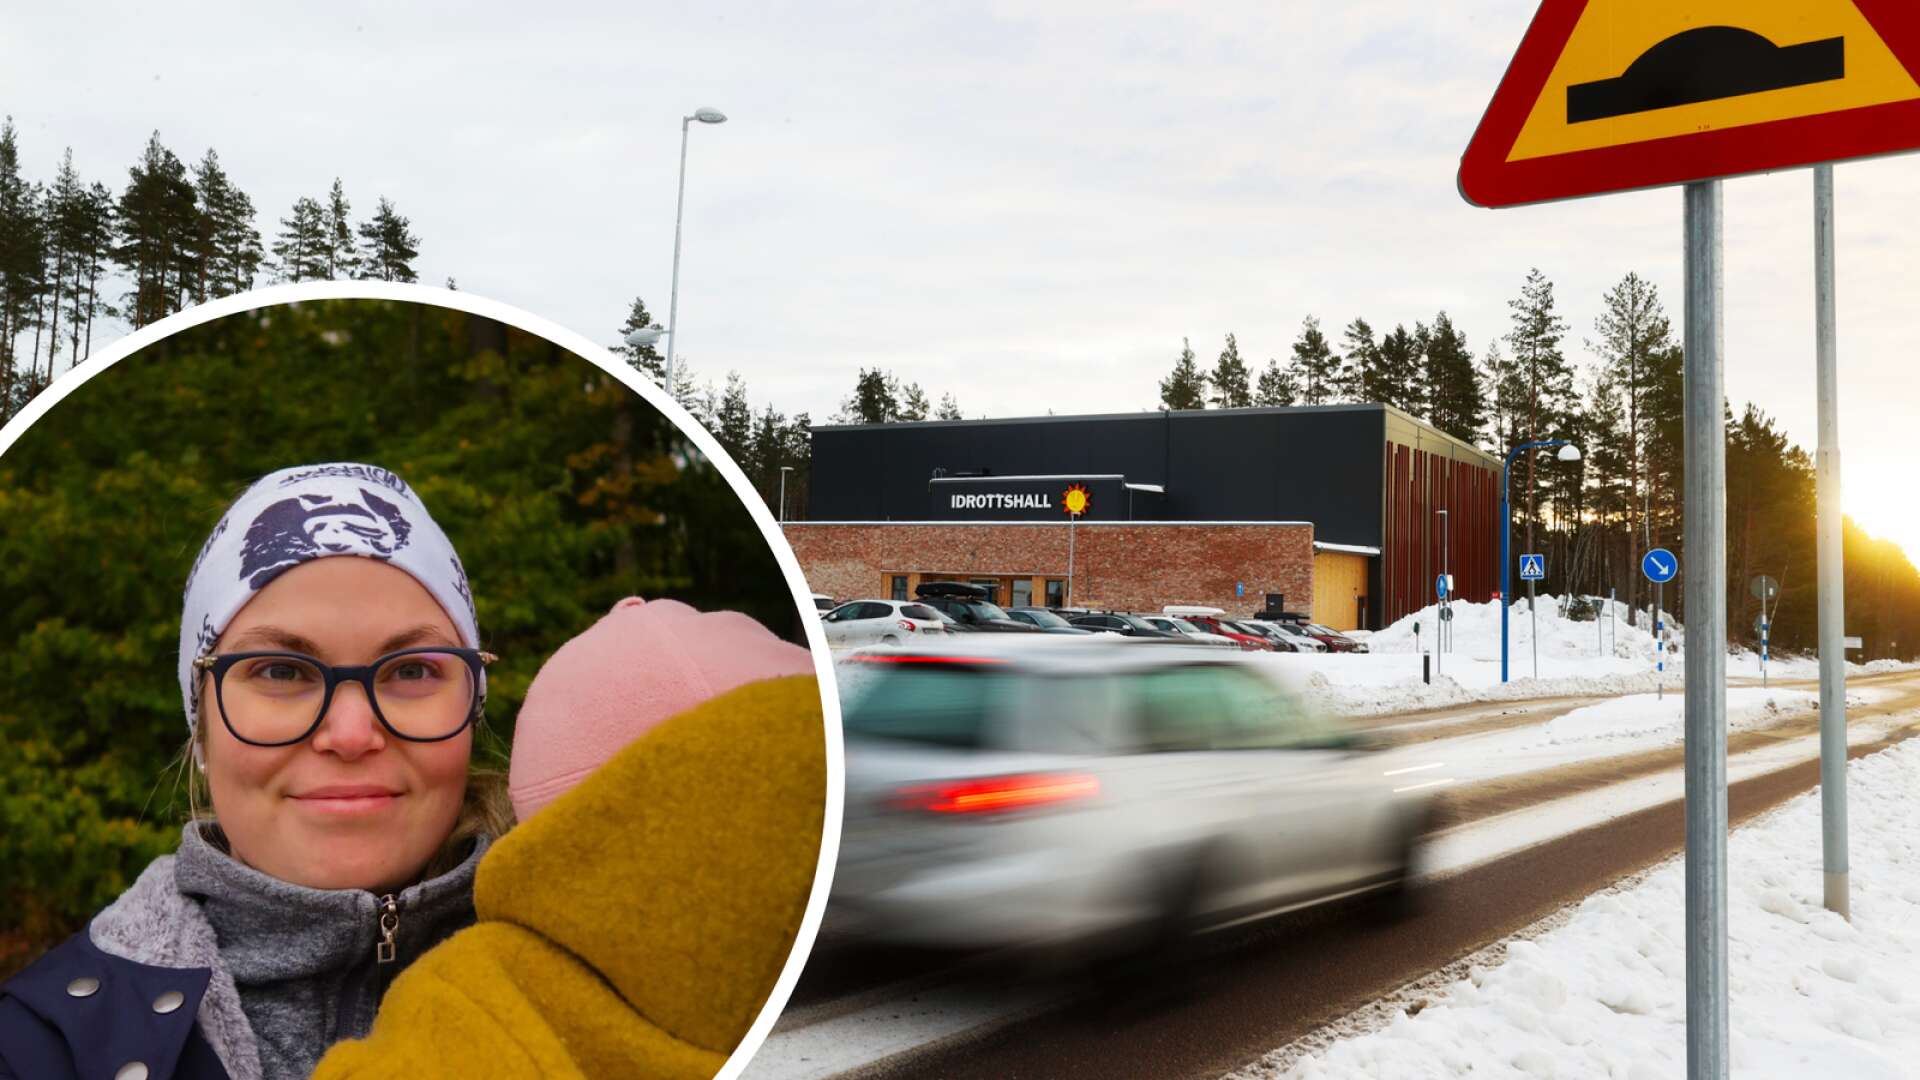 Massivt stöd för sänkt hastighet utanför nya skolan i Karlstad: ”En otrygghet”